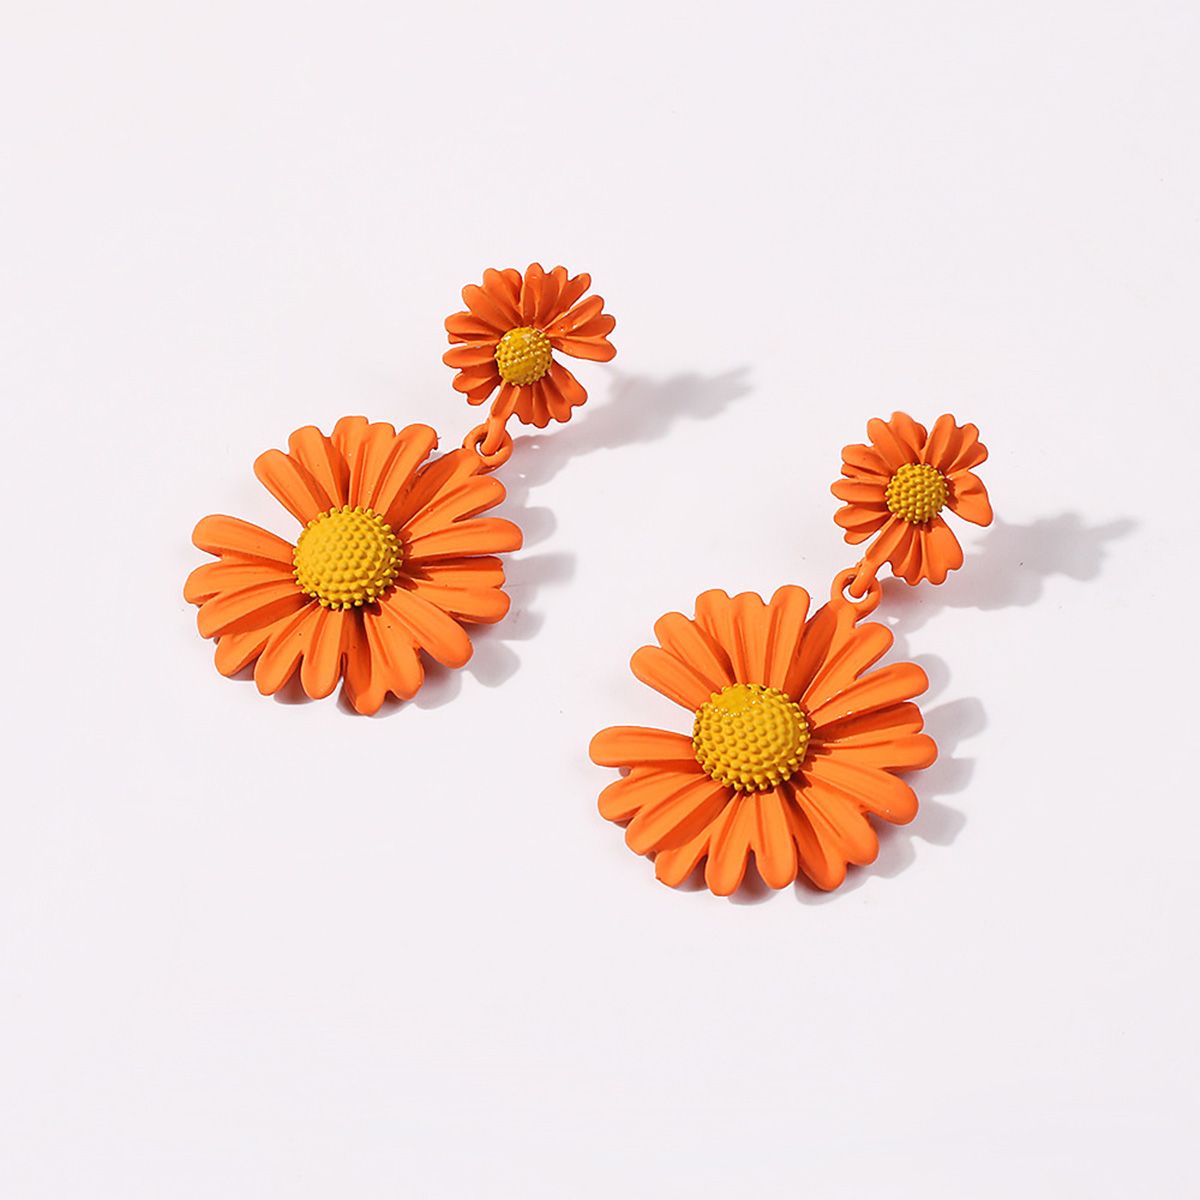  Orange Double Daisy Flower Earrings